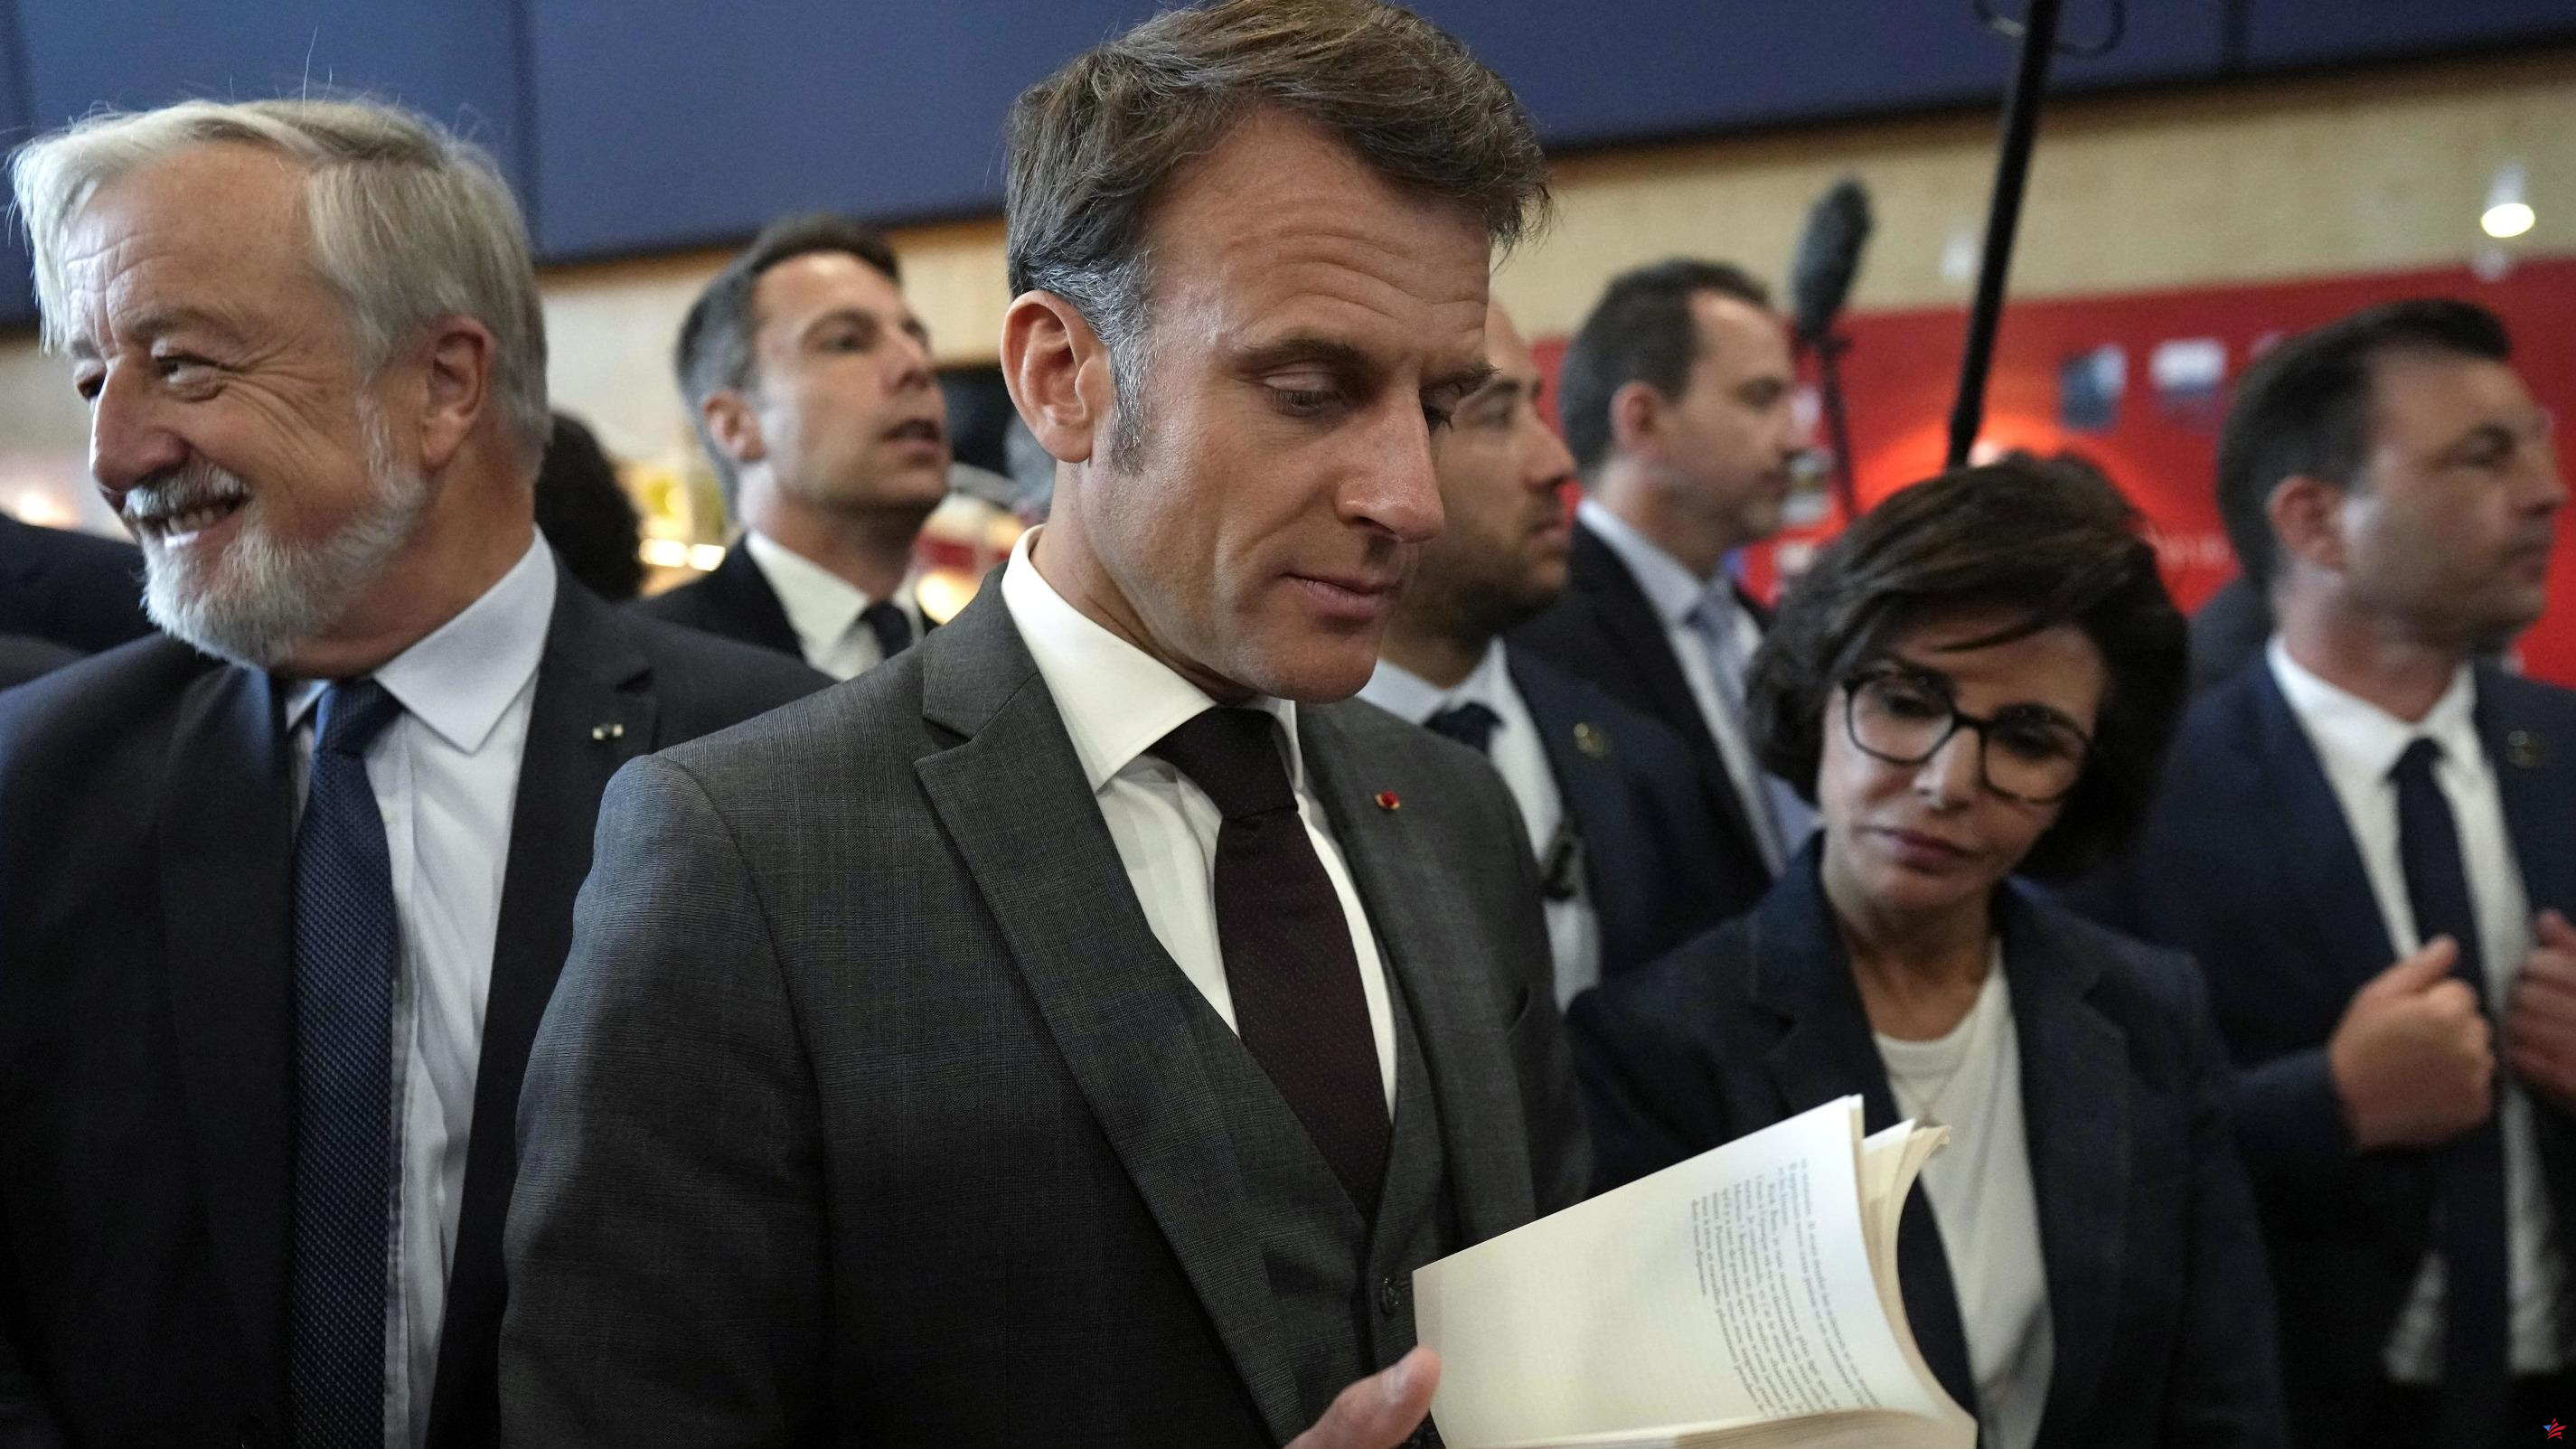 Emmanuel Macron improvisa una visita al Festival del Libro de París